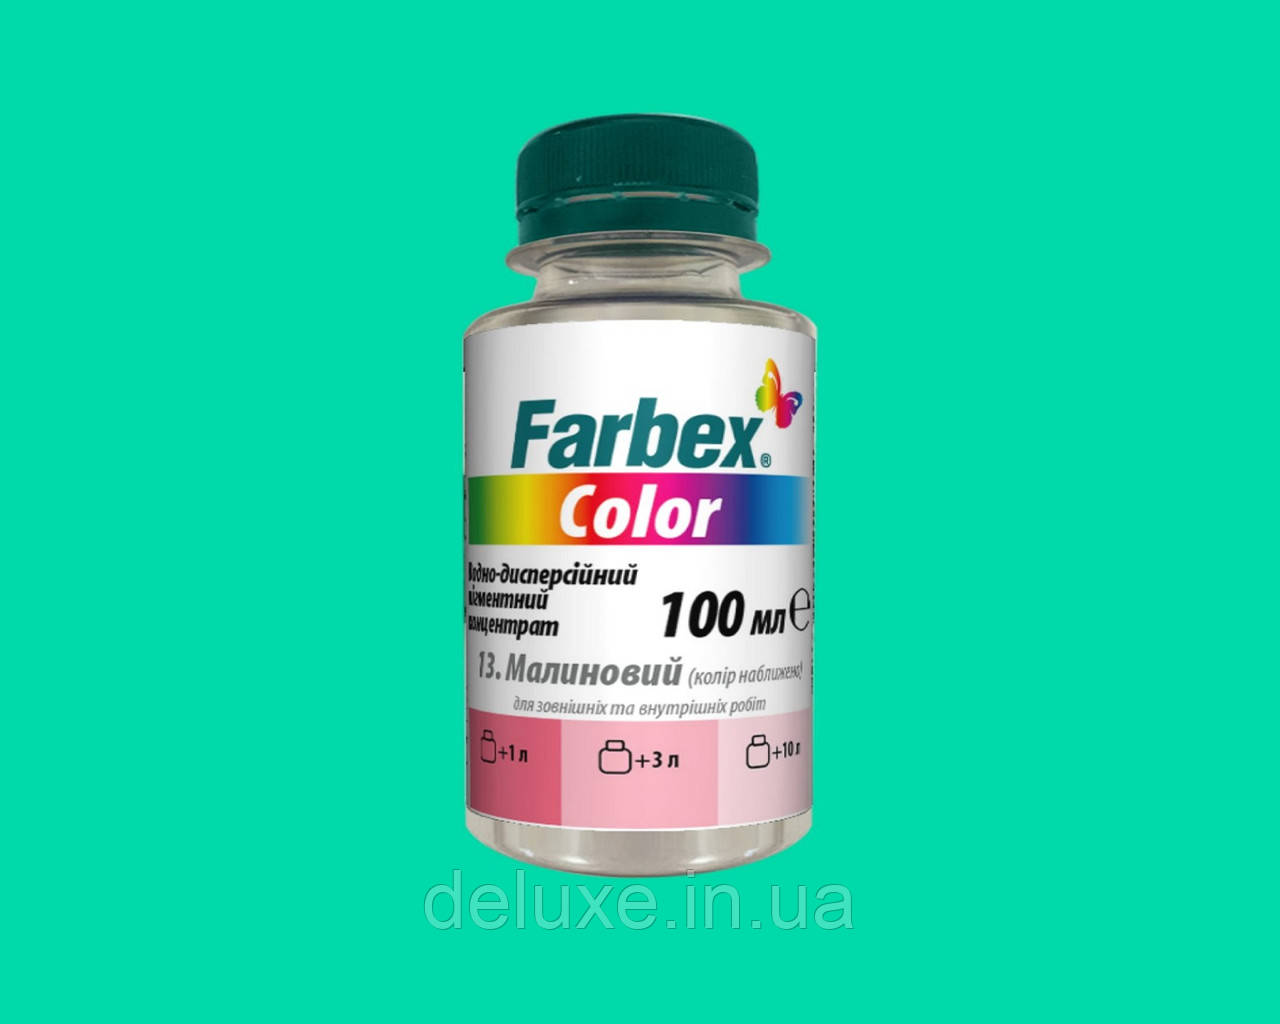 Пігментний концентрат Color універсальний, зелений, 100мл, ТМ "Farbex"